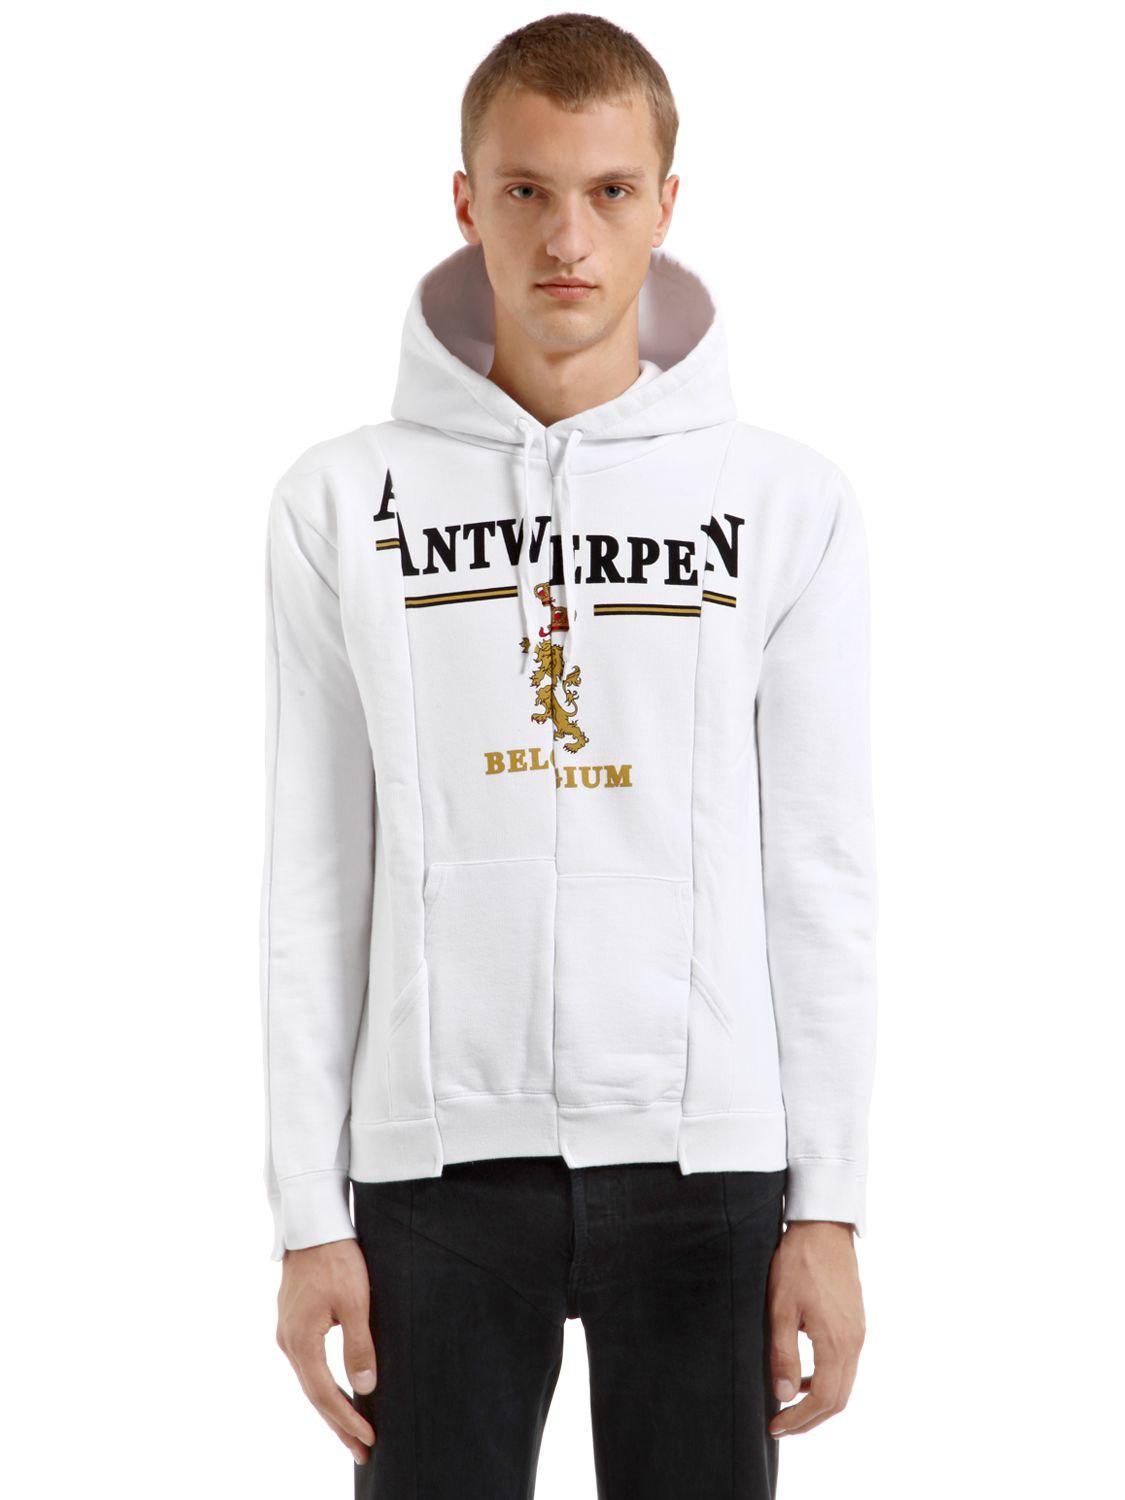 Vetements Antwerpen Cut Up Hooded Sweatshirt in White for Men - Lyst